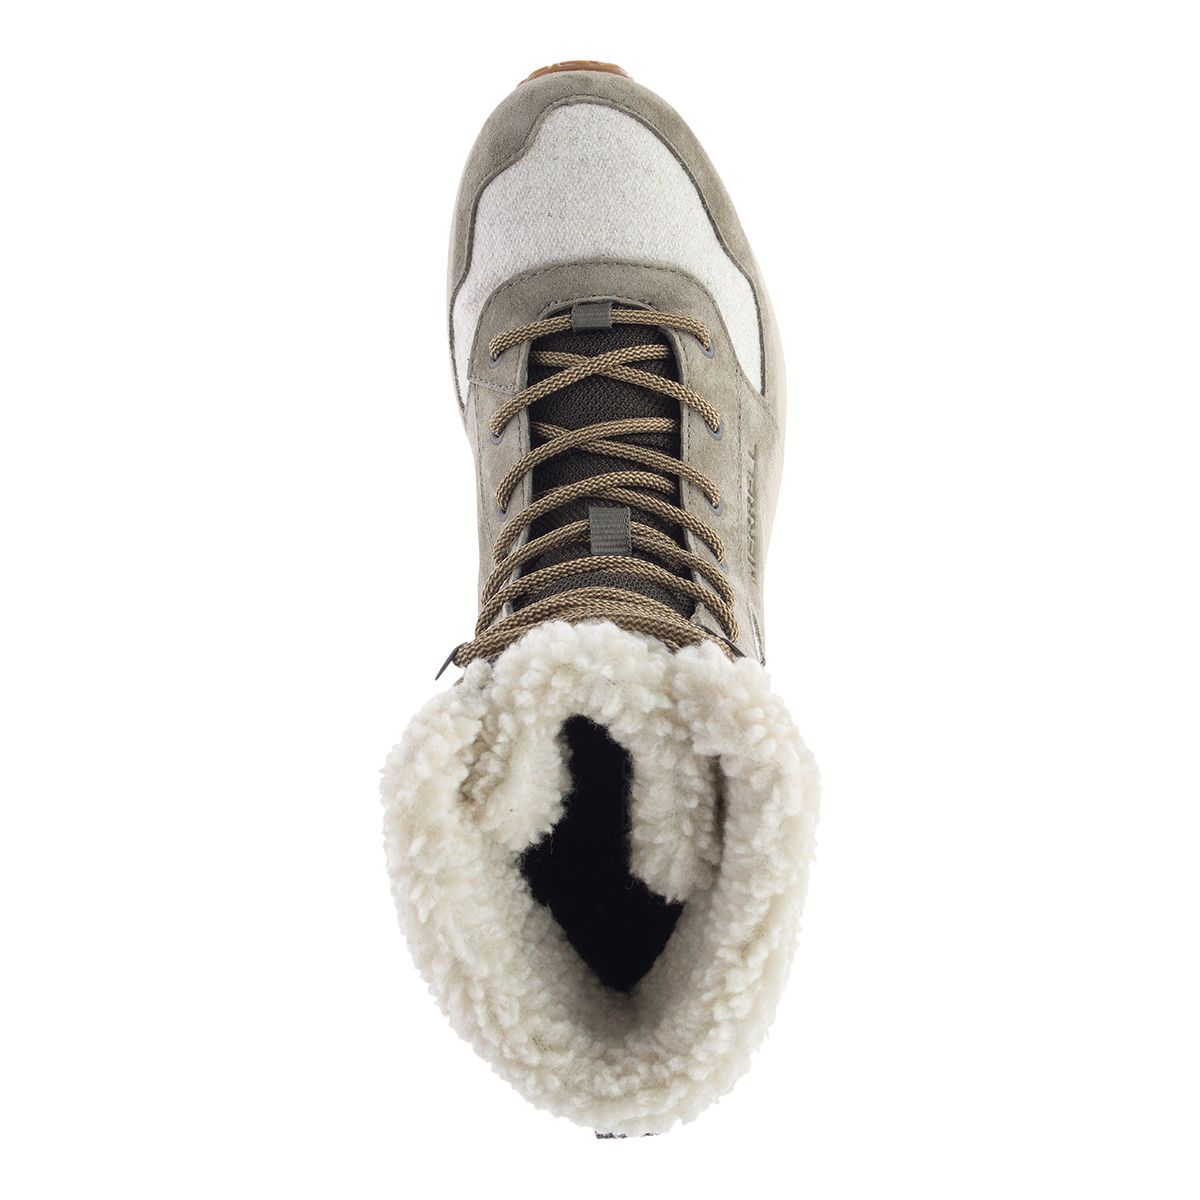 Merrell Ontario Tall Polar Waterproof - Winter boots Women's, Buy online